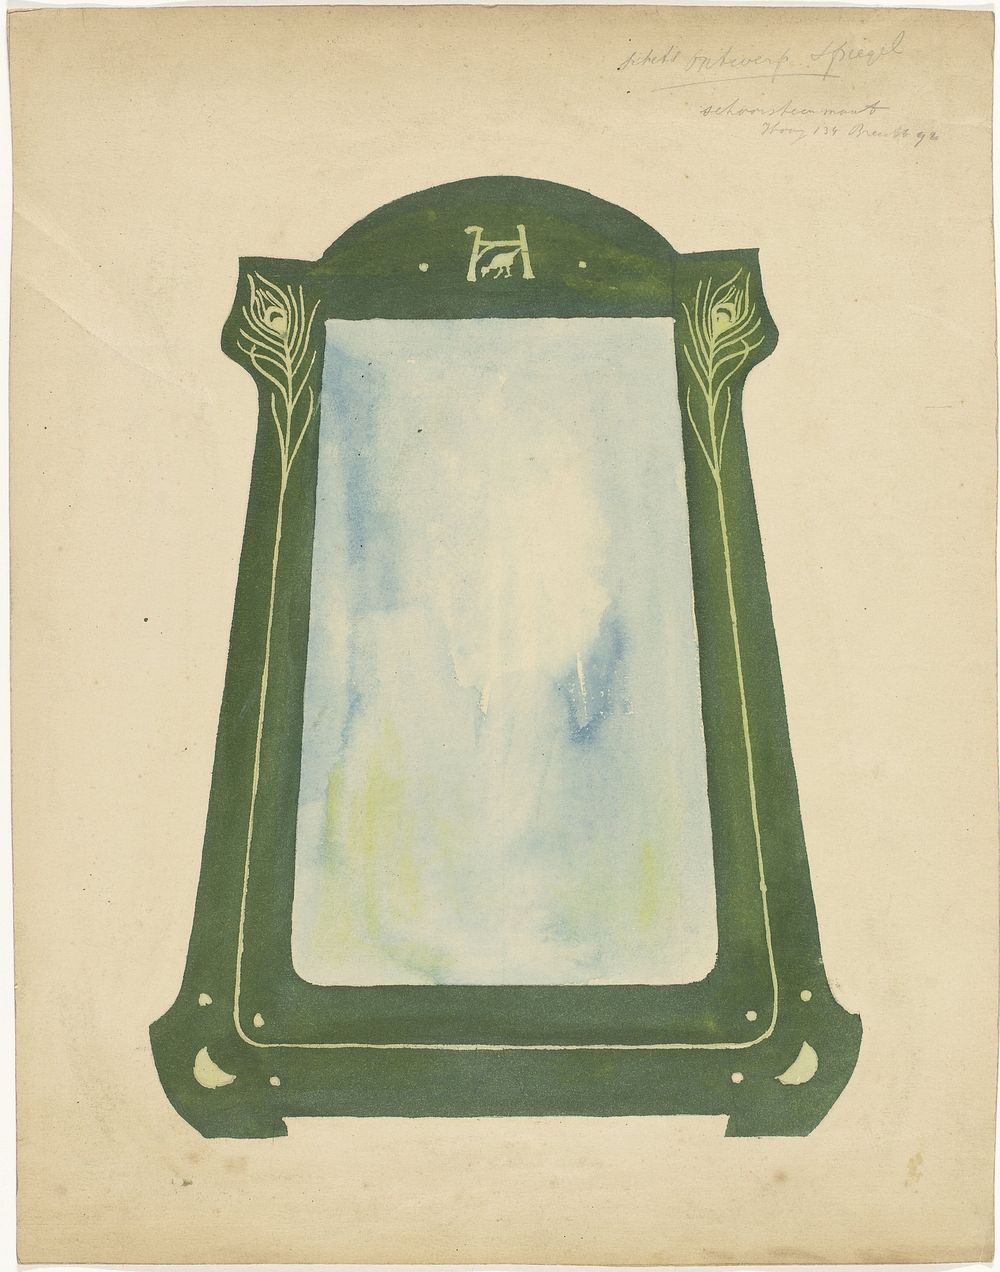 Ontwerp voor een spiegel (1887 - 1911) by Gust van de Wall Perné